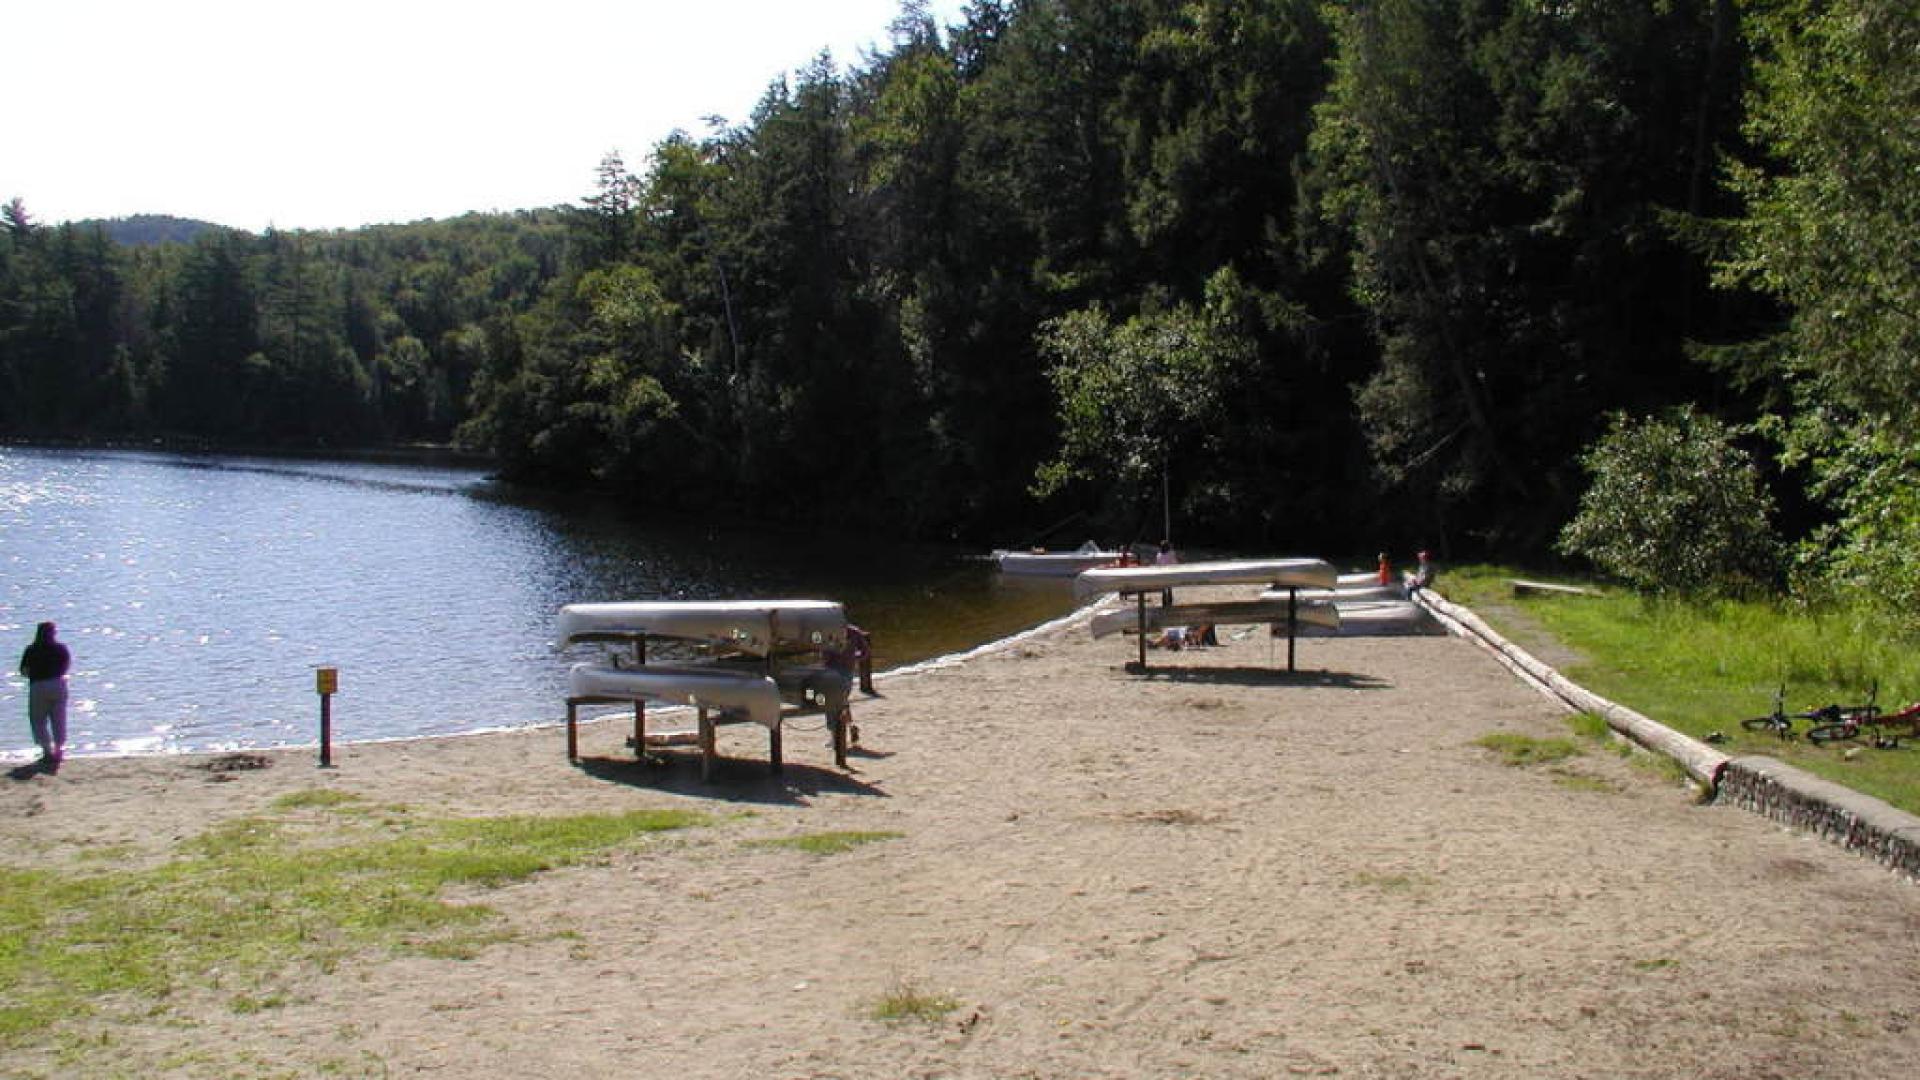 Paradox Lake State Campground